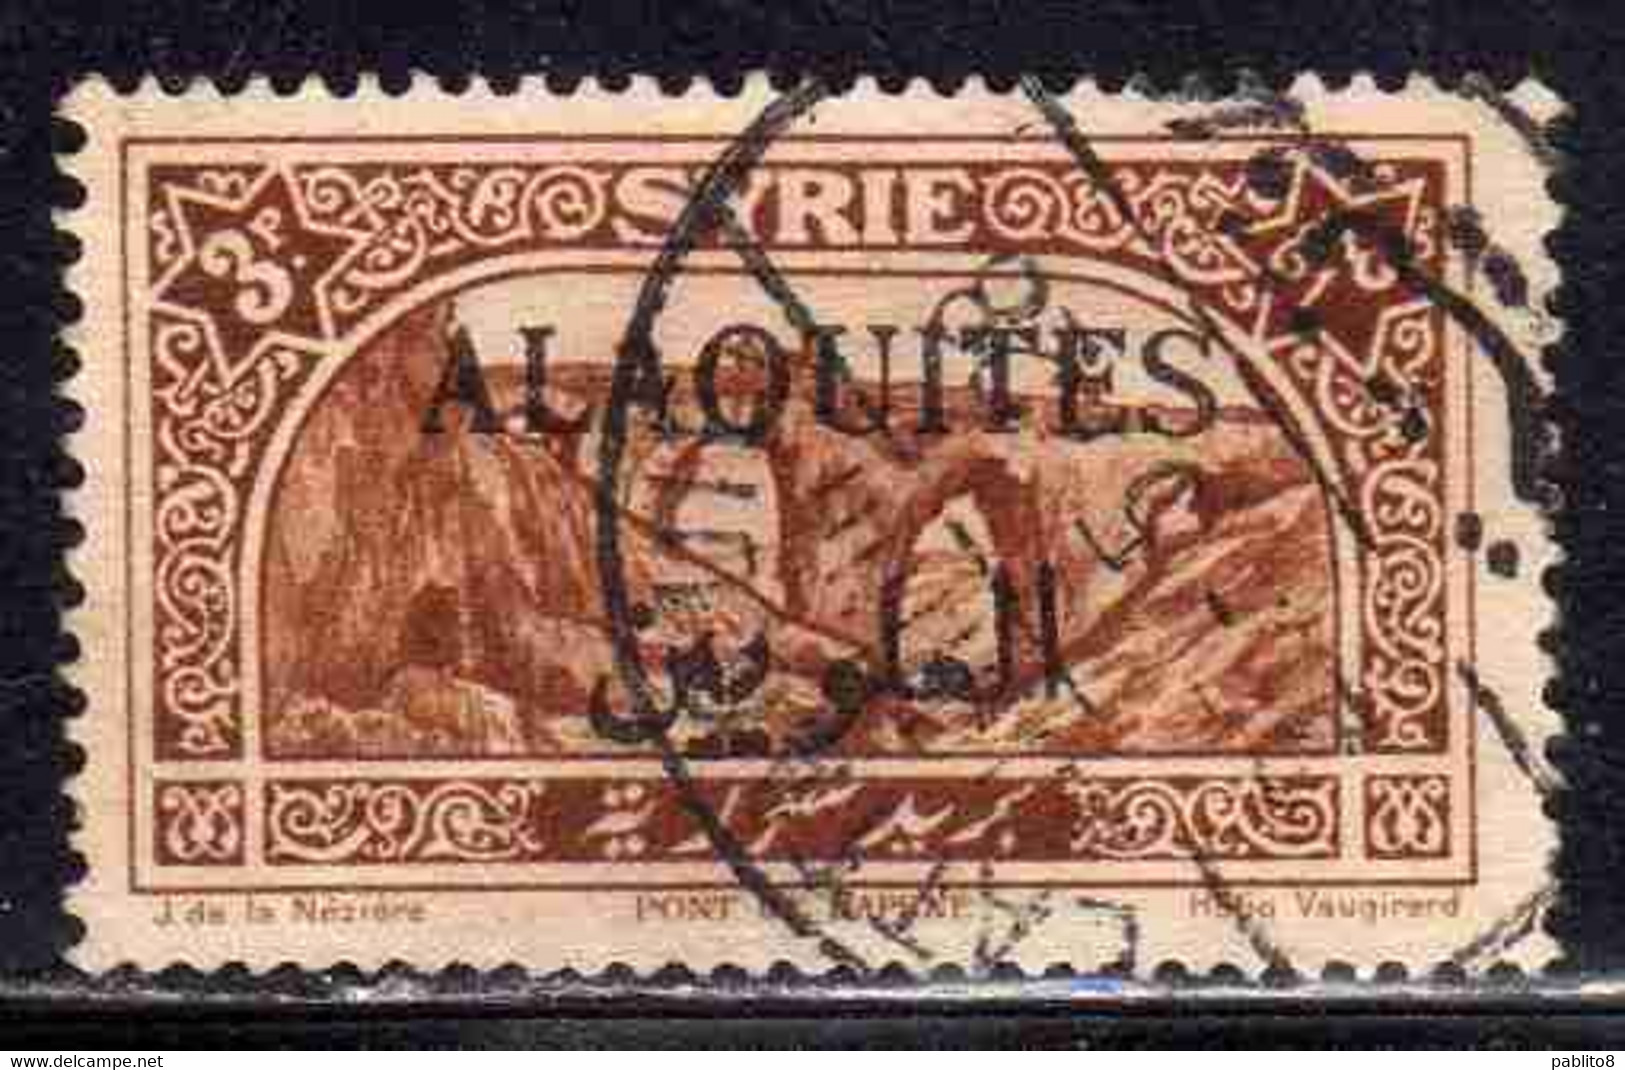 ALAOUITES SYRIA SIRIA ALAQUITES 1925 BRIDGE OF DAPHNE 3p USED USATO OBLITERE' - Used Stamps